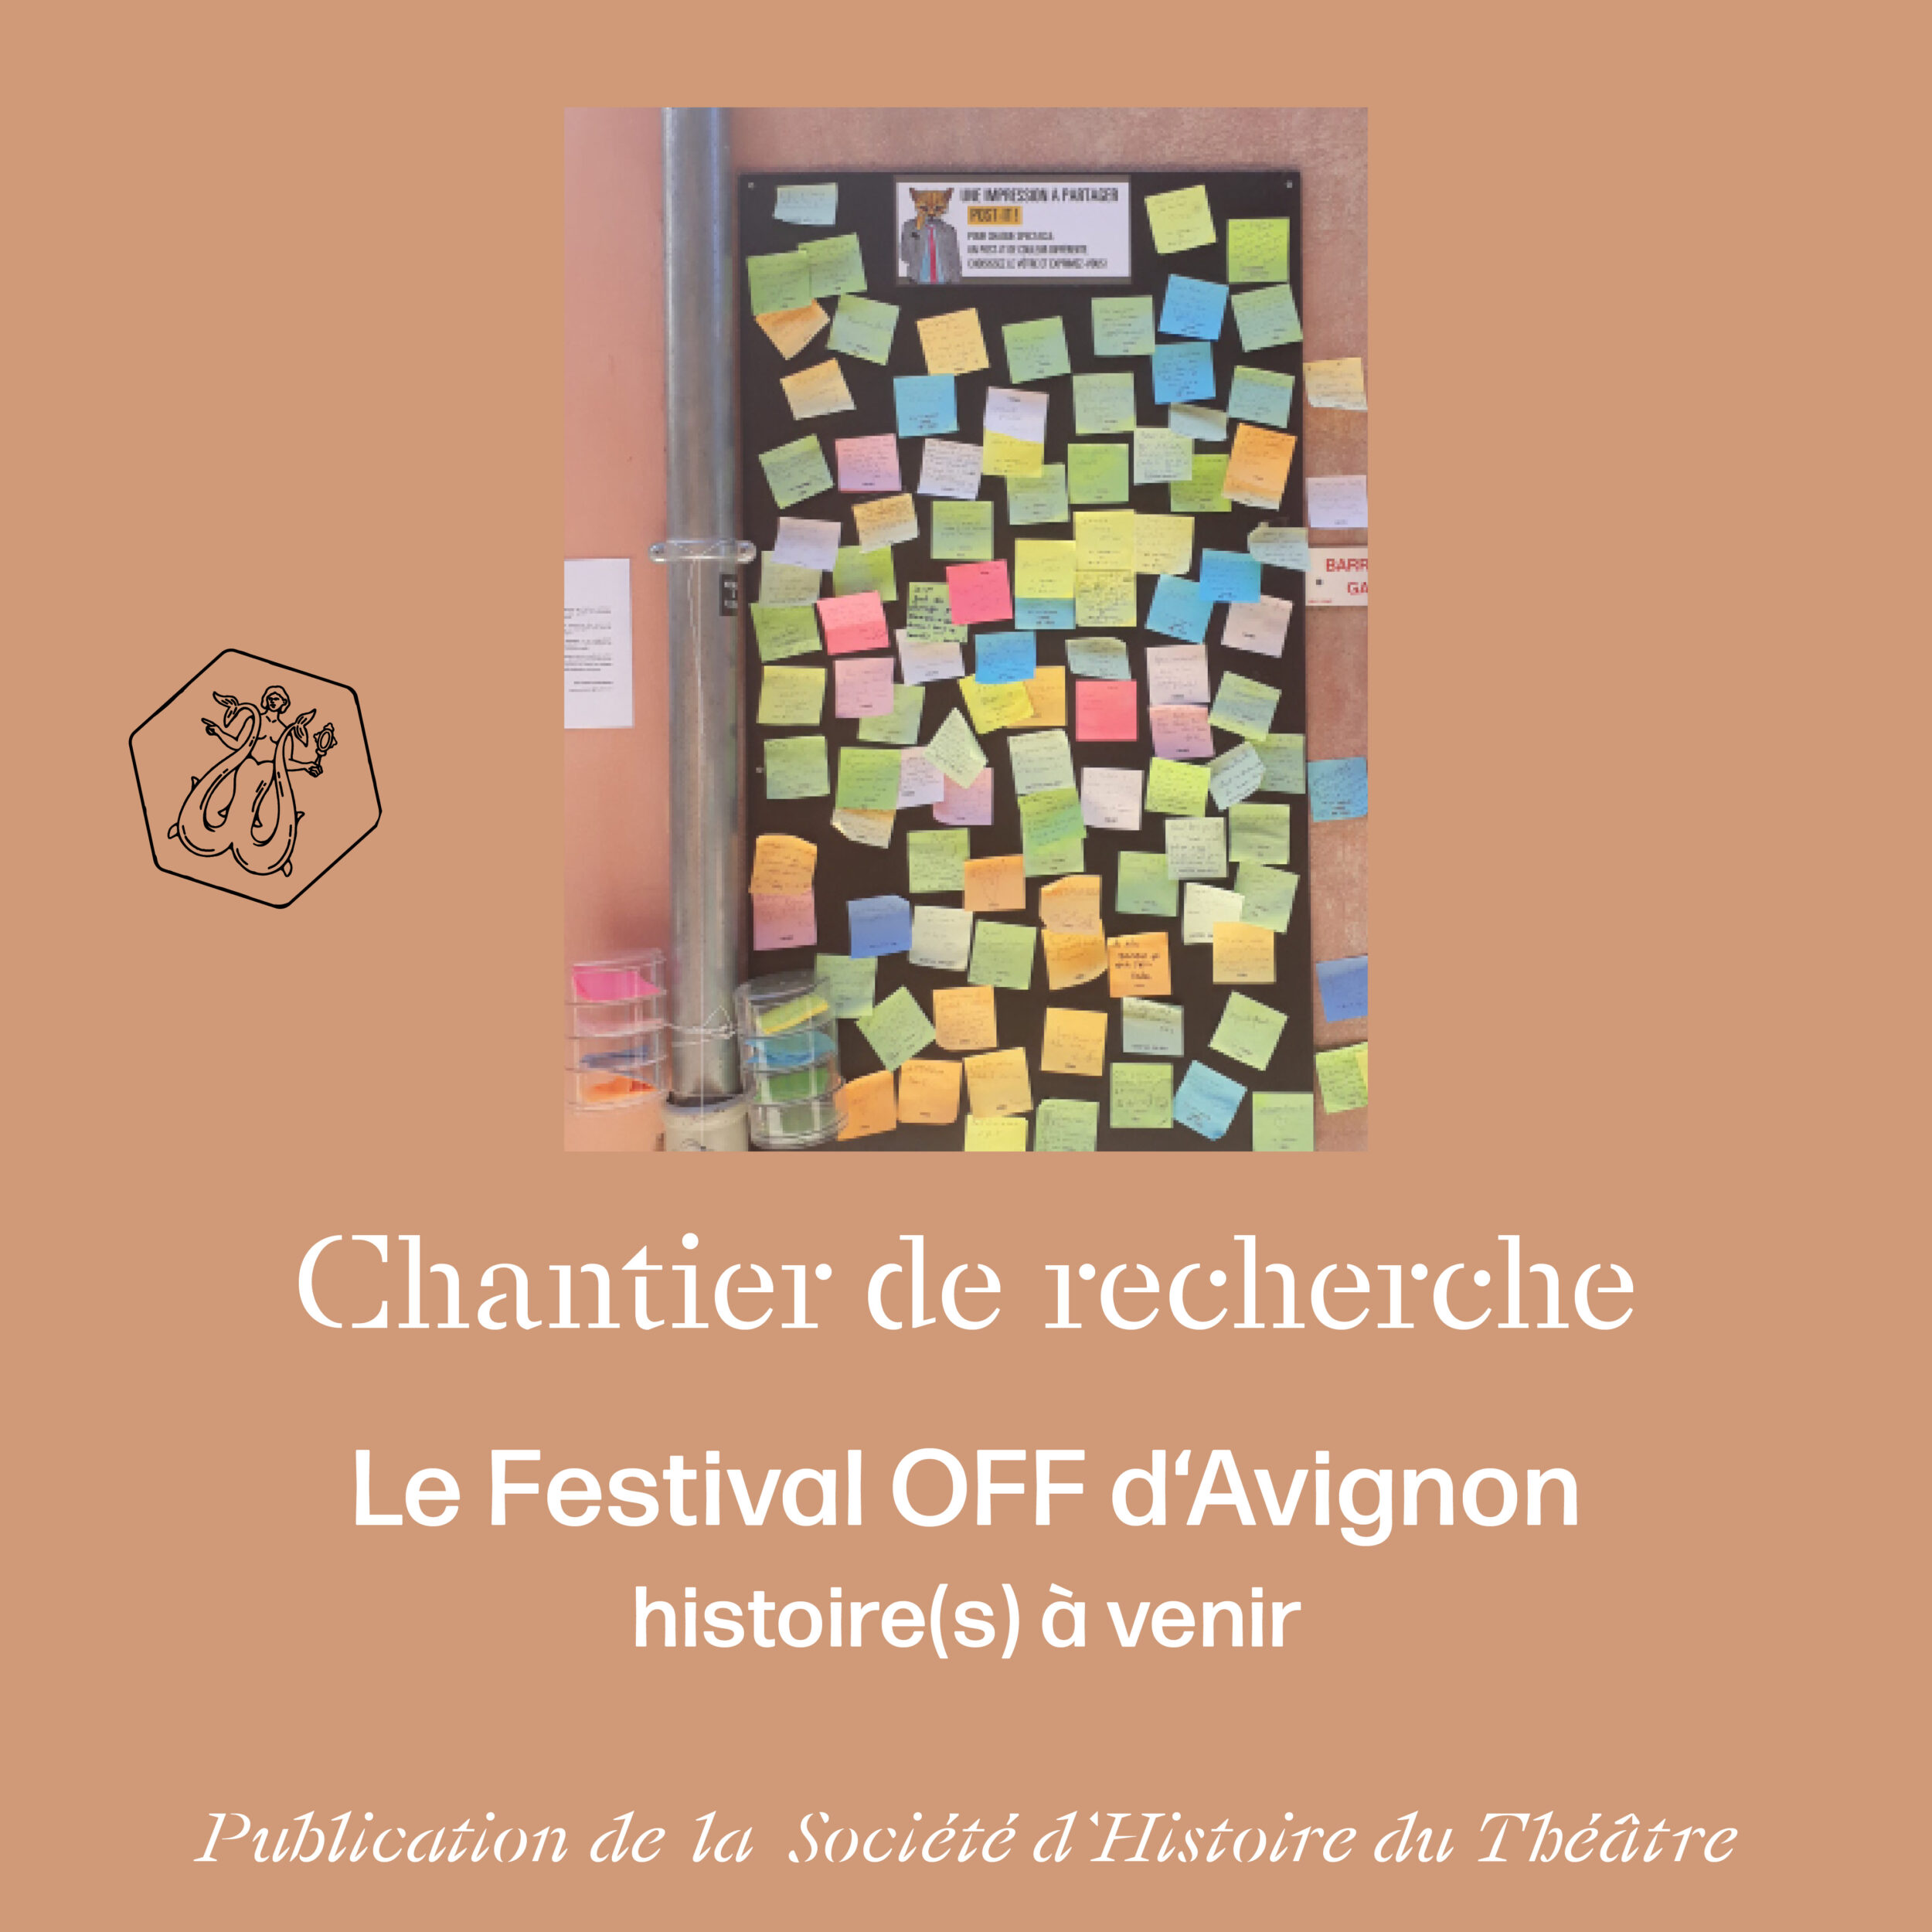 Histoire du Festival OFF d’Avignon